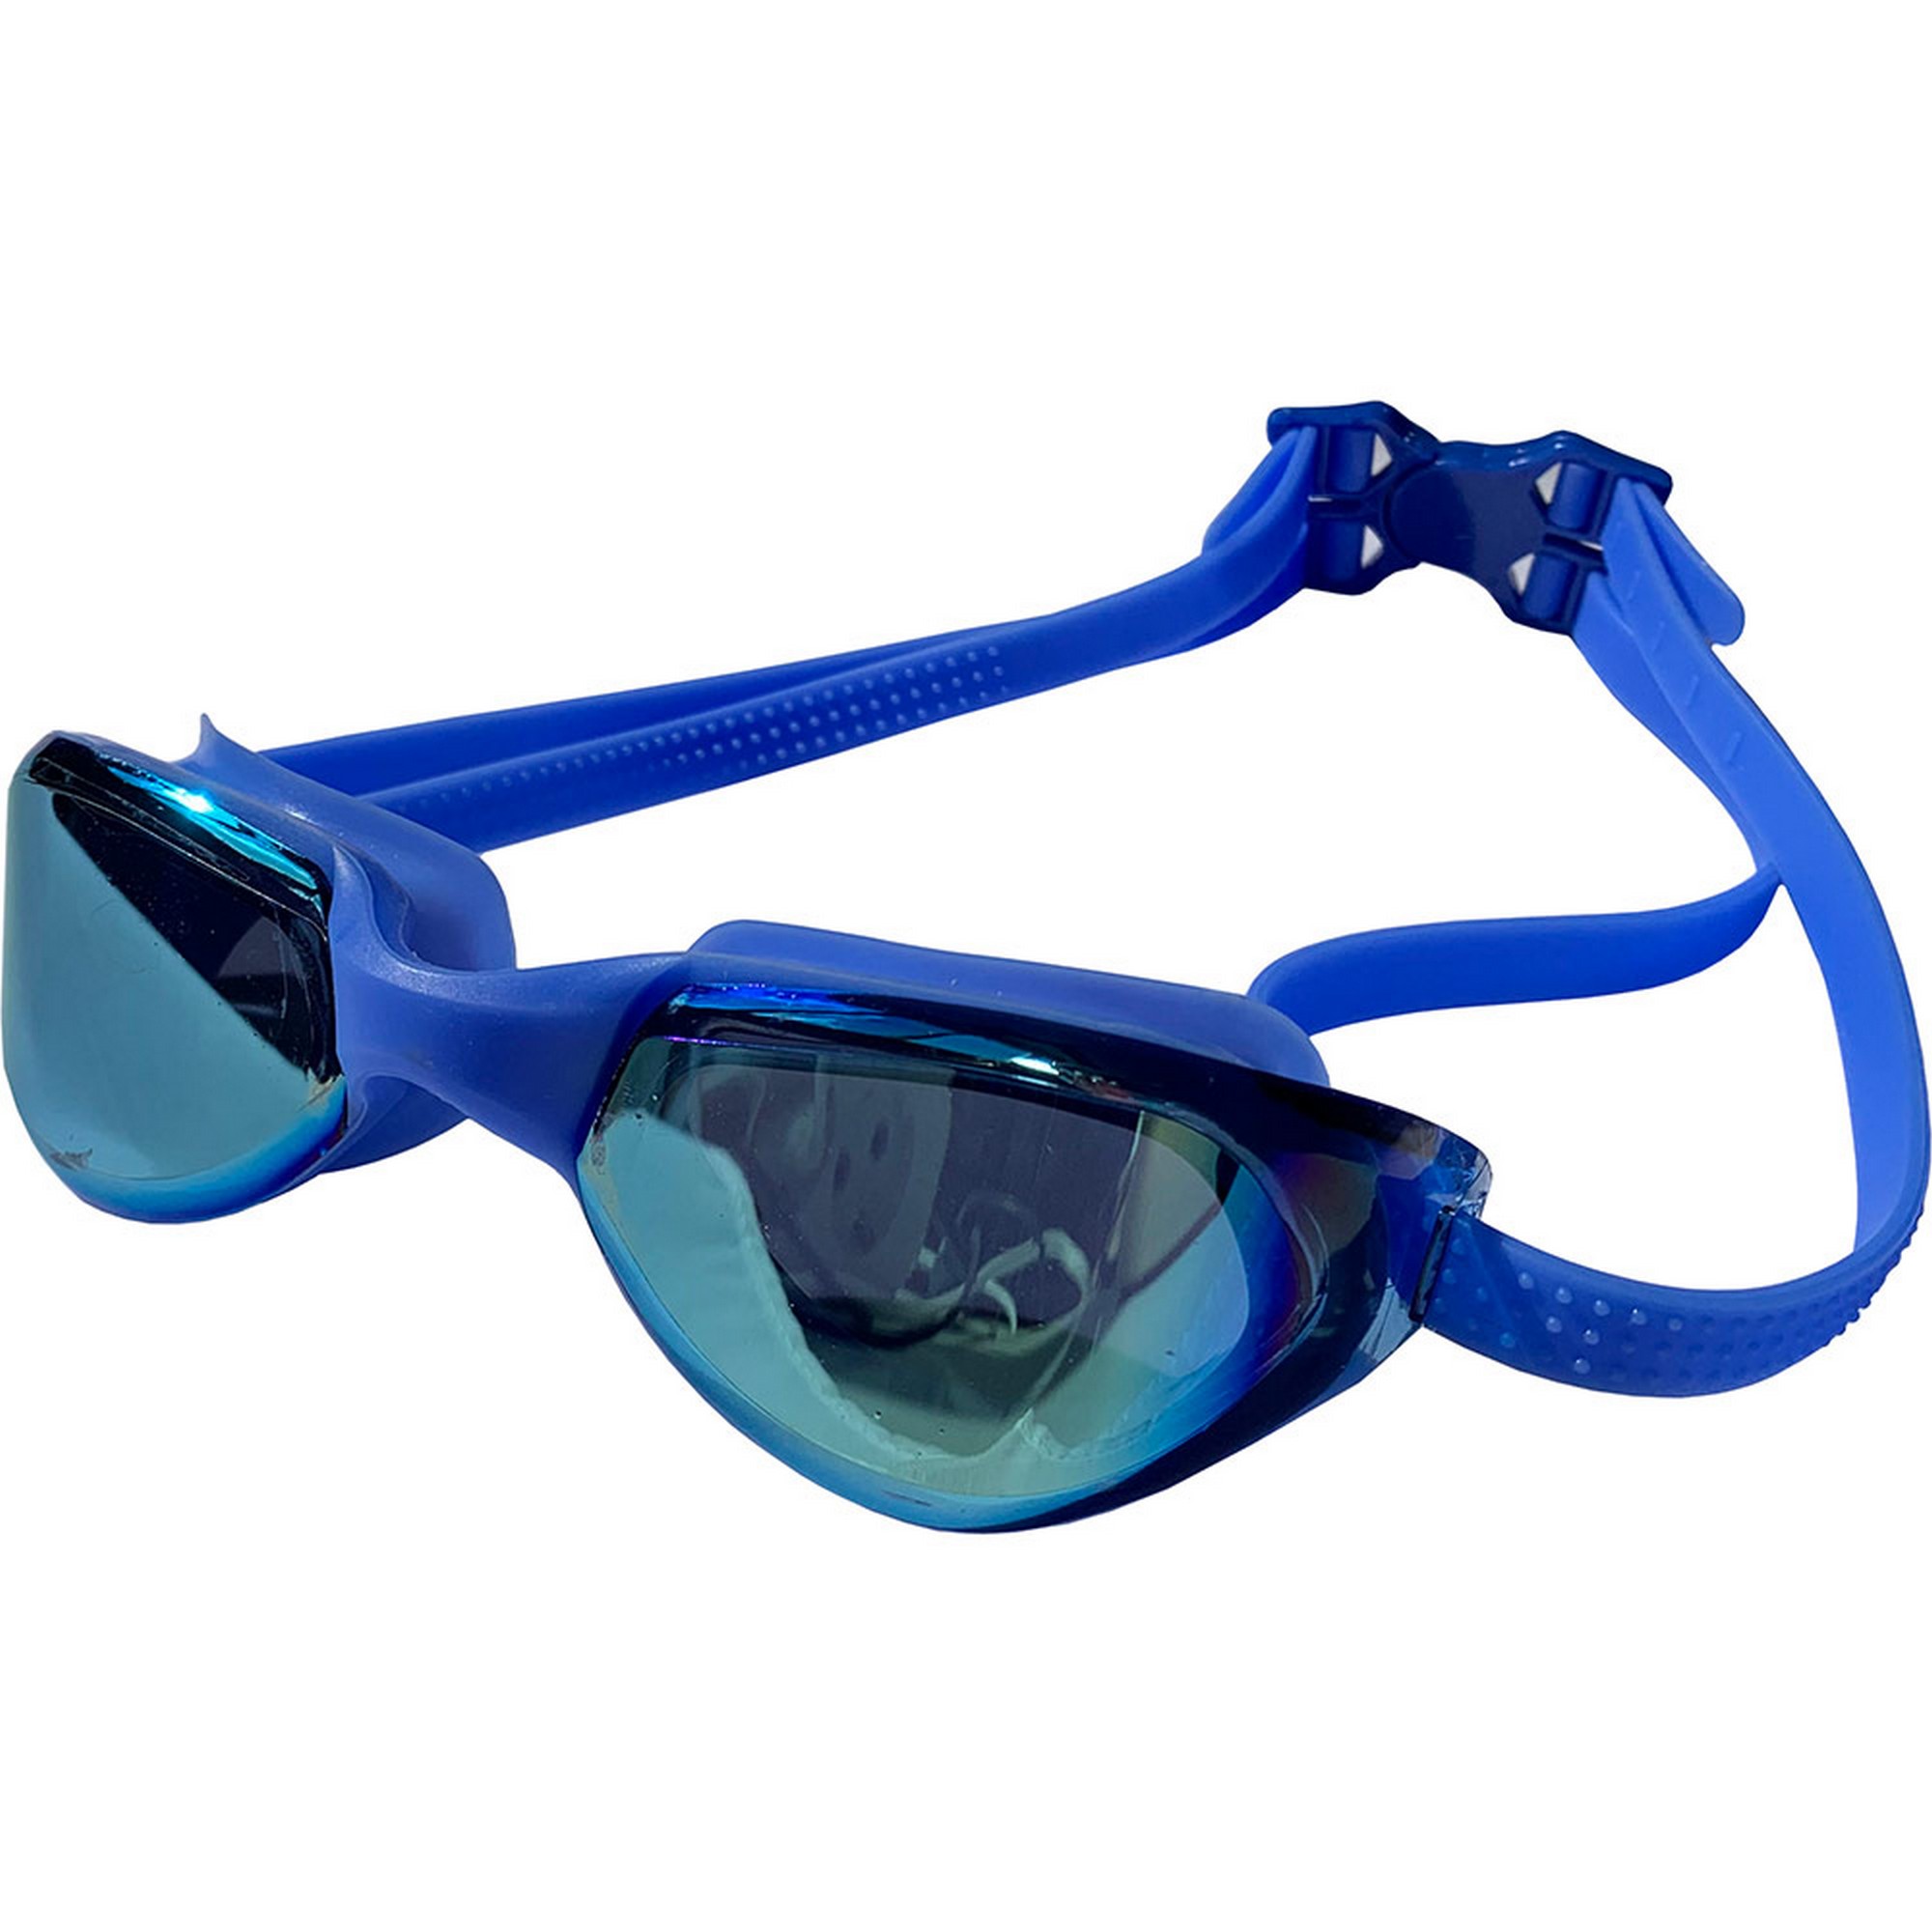 Очки для плавания Sportex взрослые, зеркальные E33119-1 синий,  - купить со скидкой